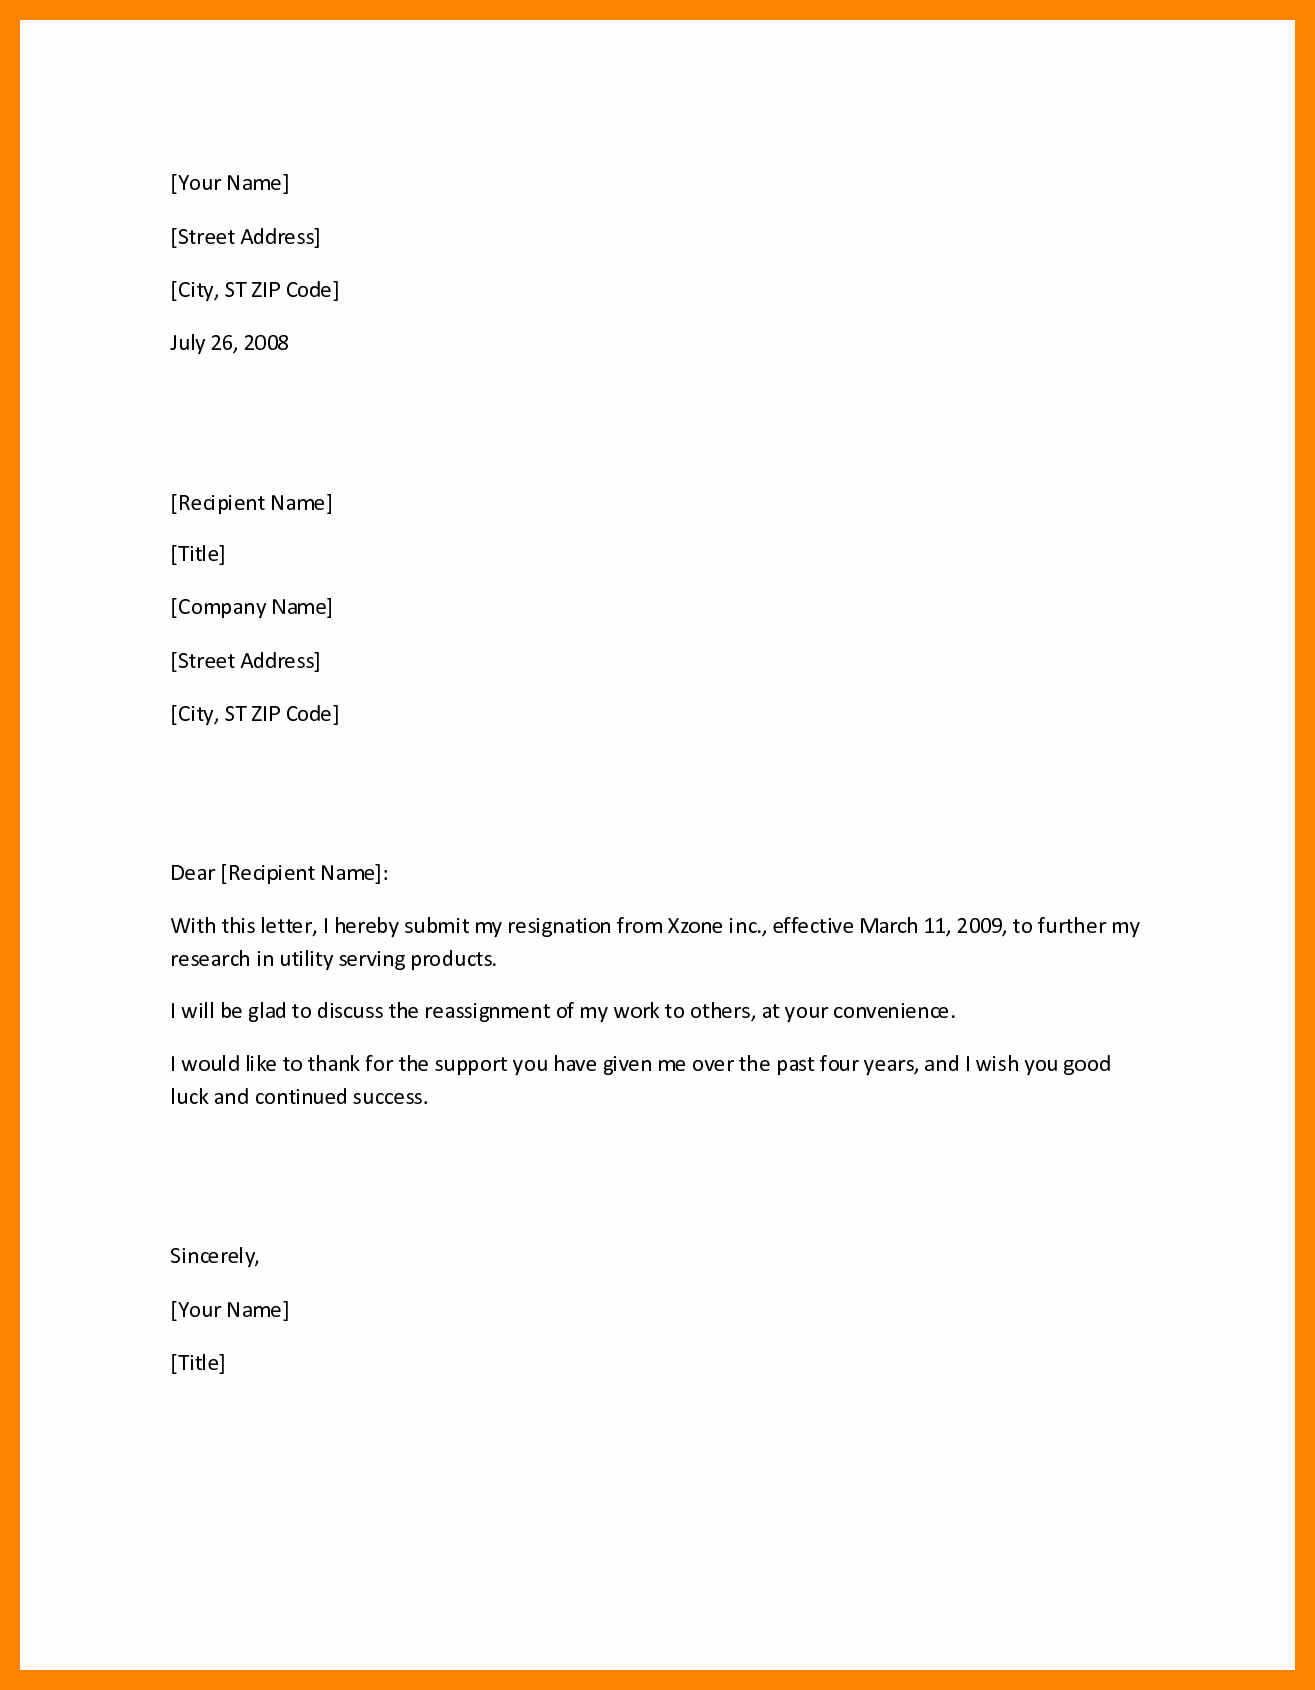 Resignation Letter Effective Immediately Awesome 7 Effective Immediately Letter